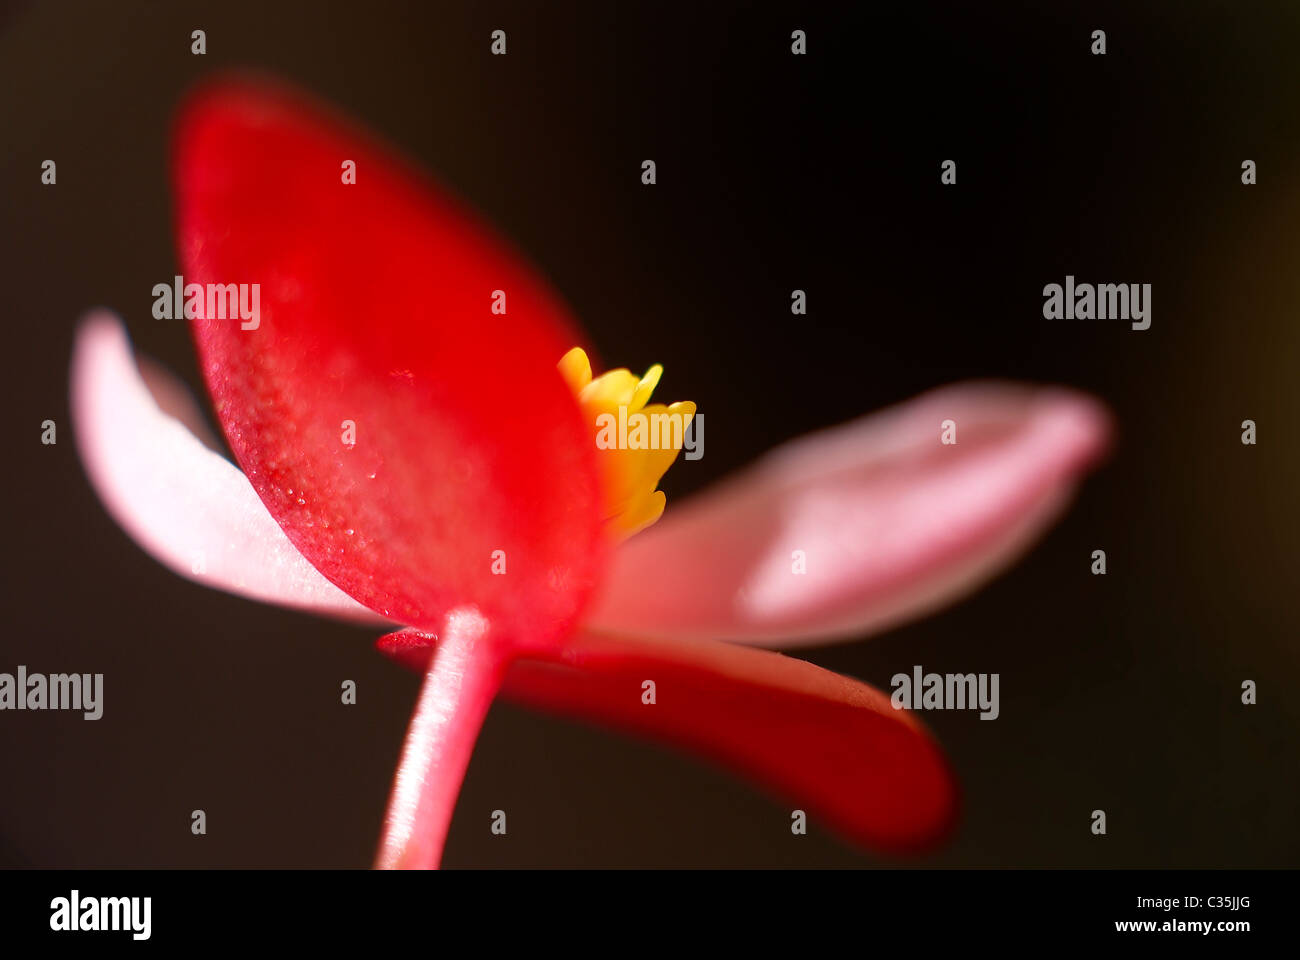 Bagonia, rosa, weiß, rot, dunklen Hintergrund, Blume, roten Blüten, Makro, Nahaufnahme, schließen sich zu konzentrieren, schwarz Stockfoto